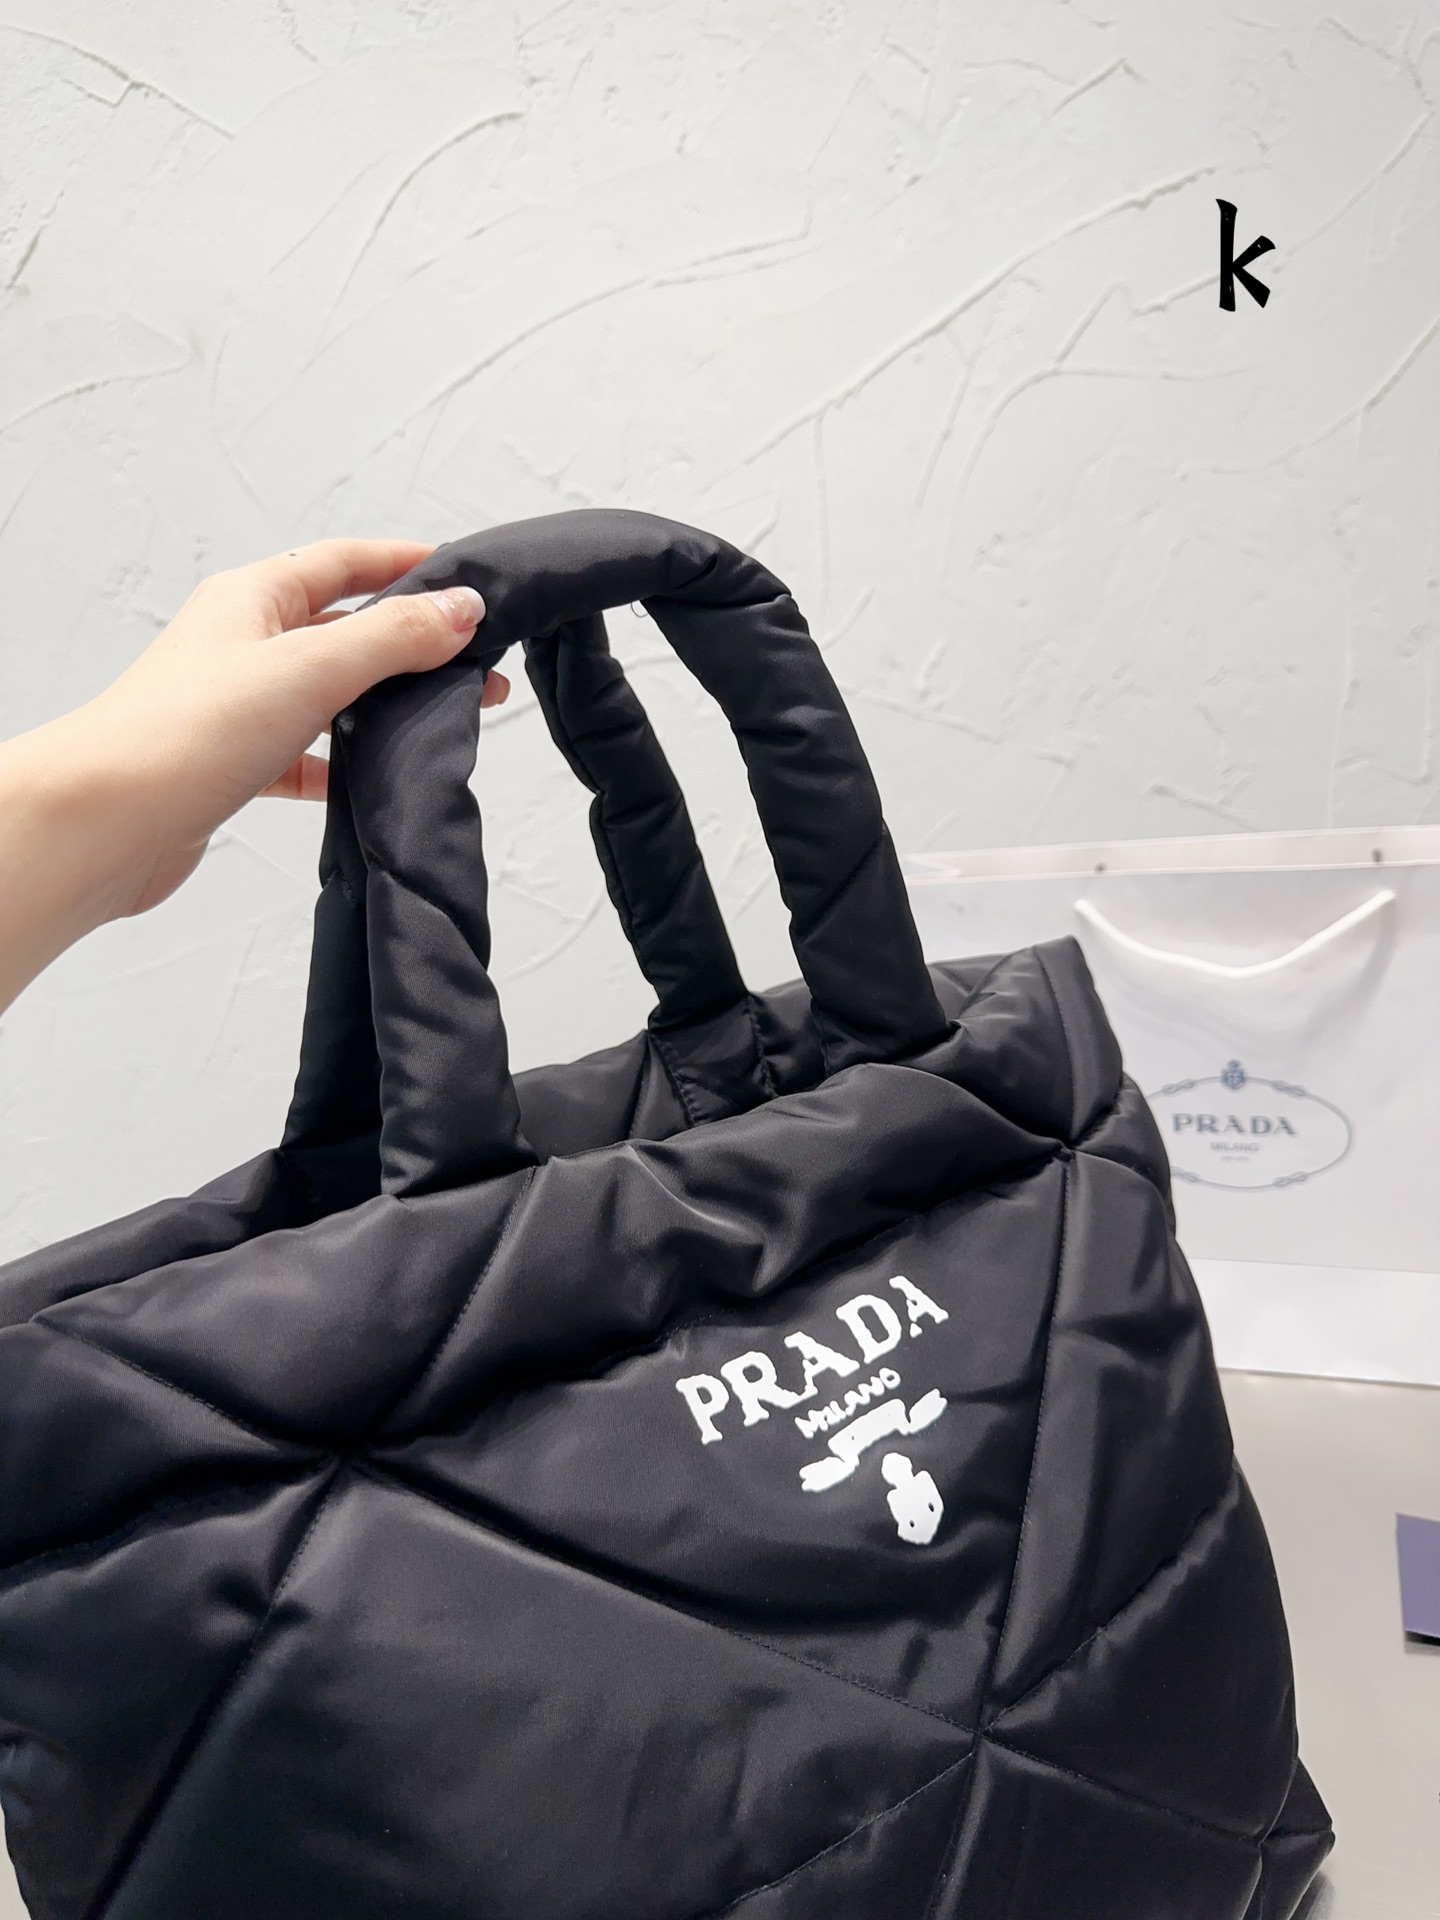 无盒 Size 底长高36*37Cm Prada 购物袋 够大够方便 轻便舒适又实用